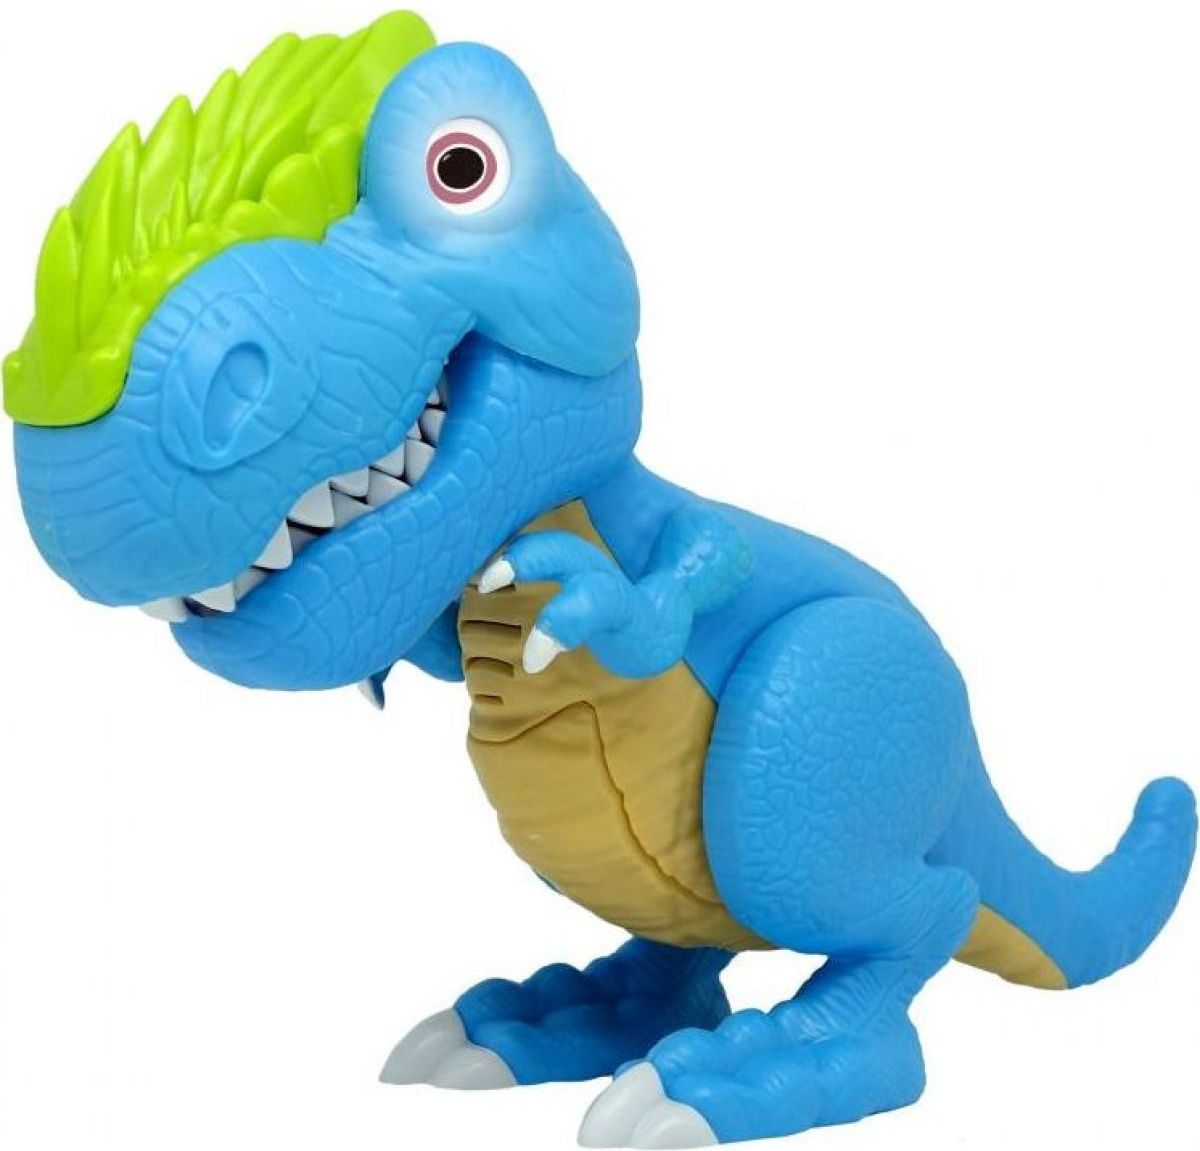 Junior Megasaur ohebný a kousací T-Rex modrý - obrázek 1